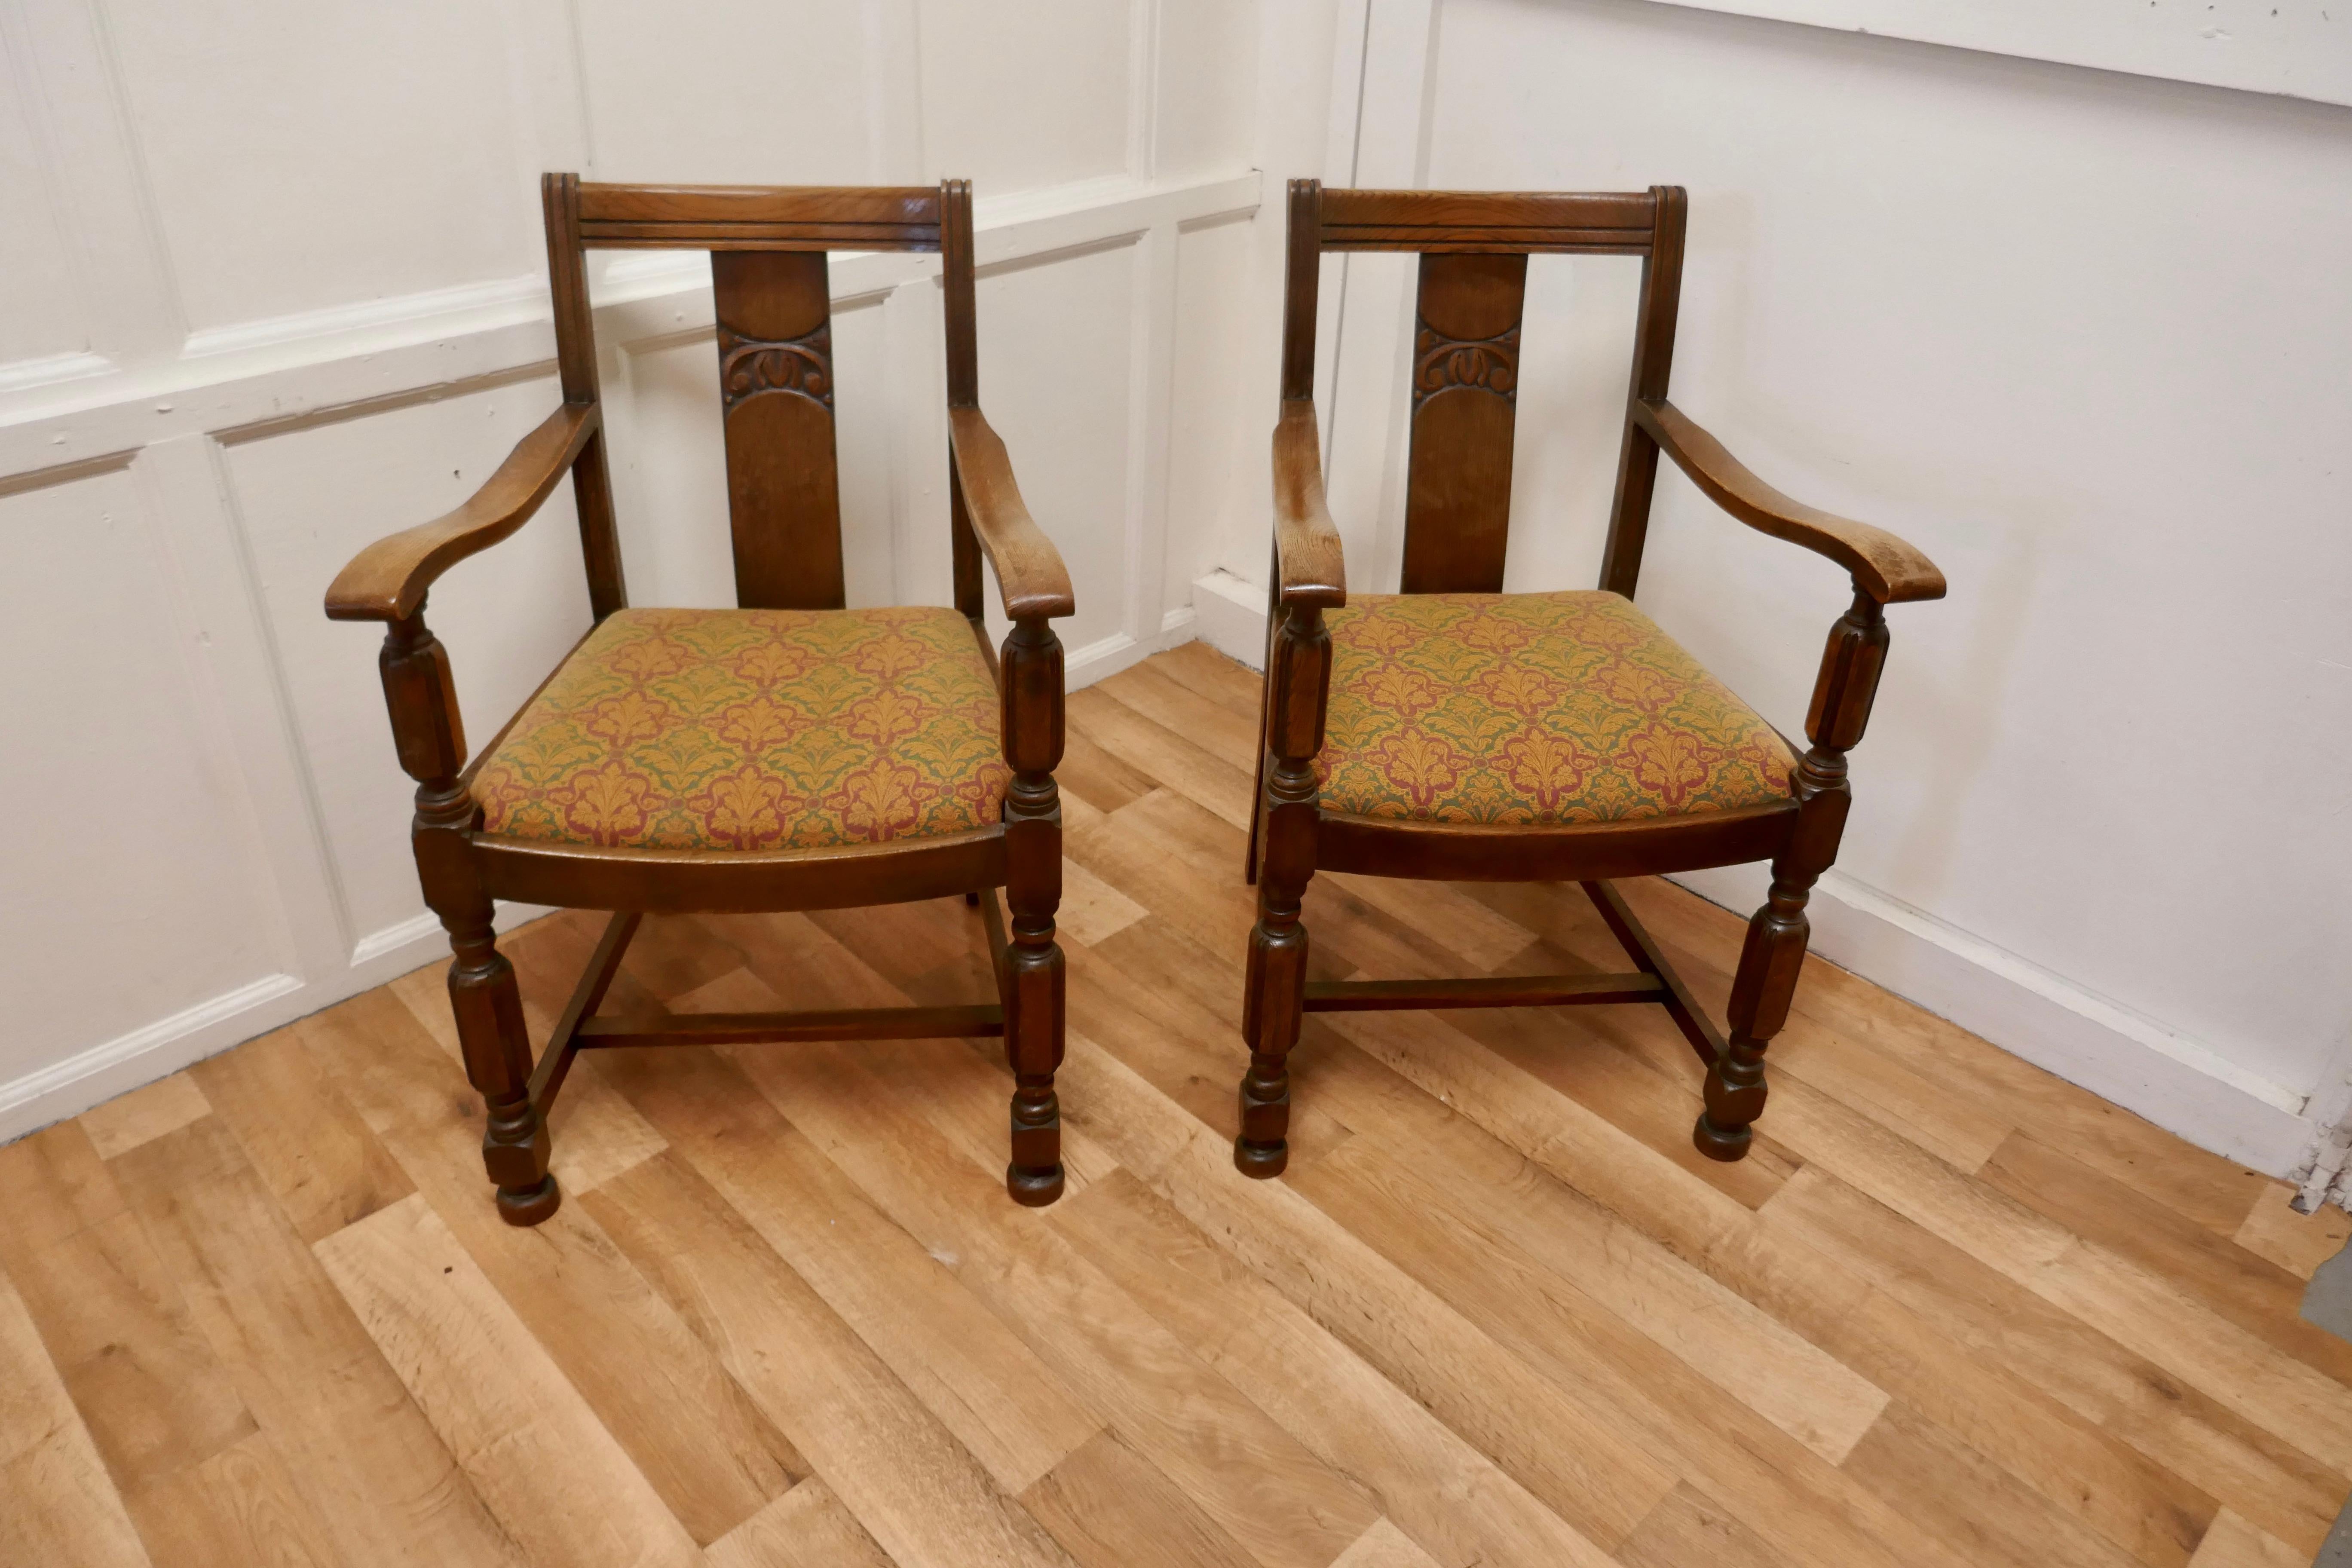 Paar Stühle aus goldener Eiche im Arts & Crafts-Stil.

Ein gutes Paar Stühle sehr stämmig und robust, die Eiche hat eine schöne Patina und die Polsterung ist gut 
Die Stühle sind 33